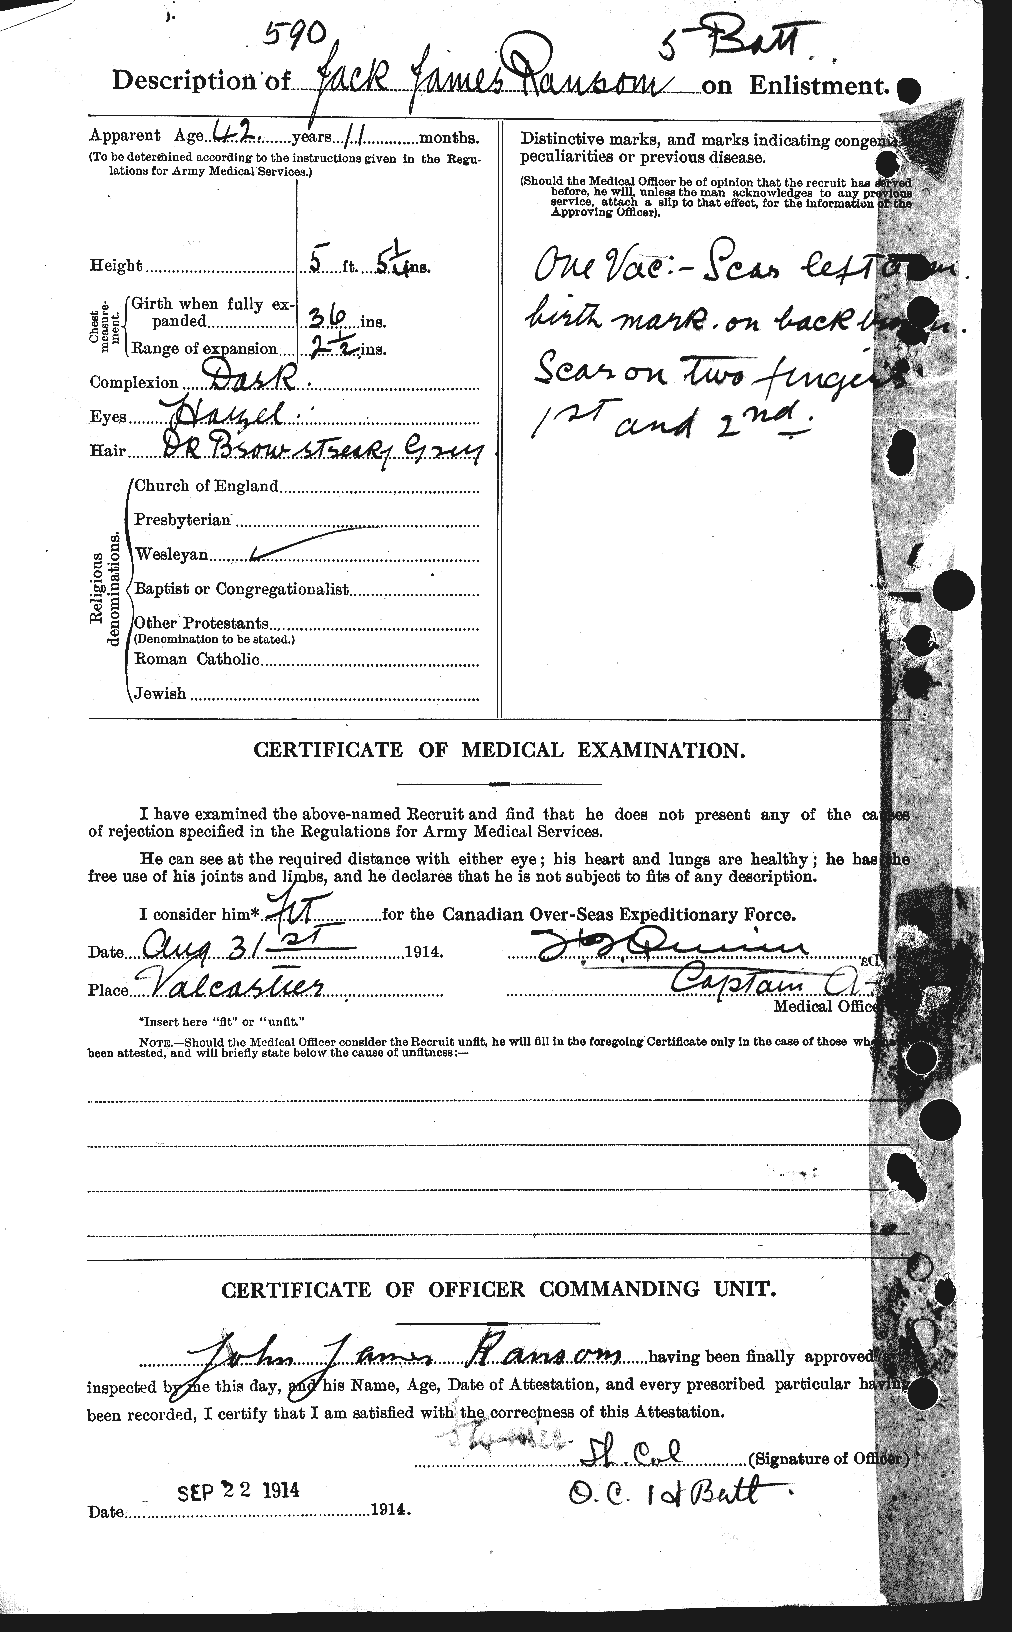 Dossiers du Personnel de la Première Guerre mondiale - CEC 594890b